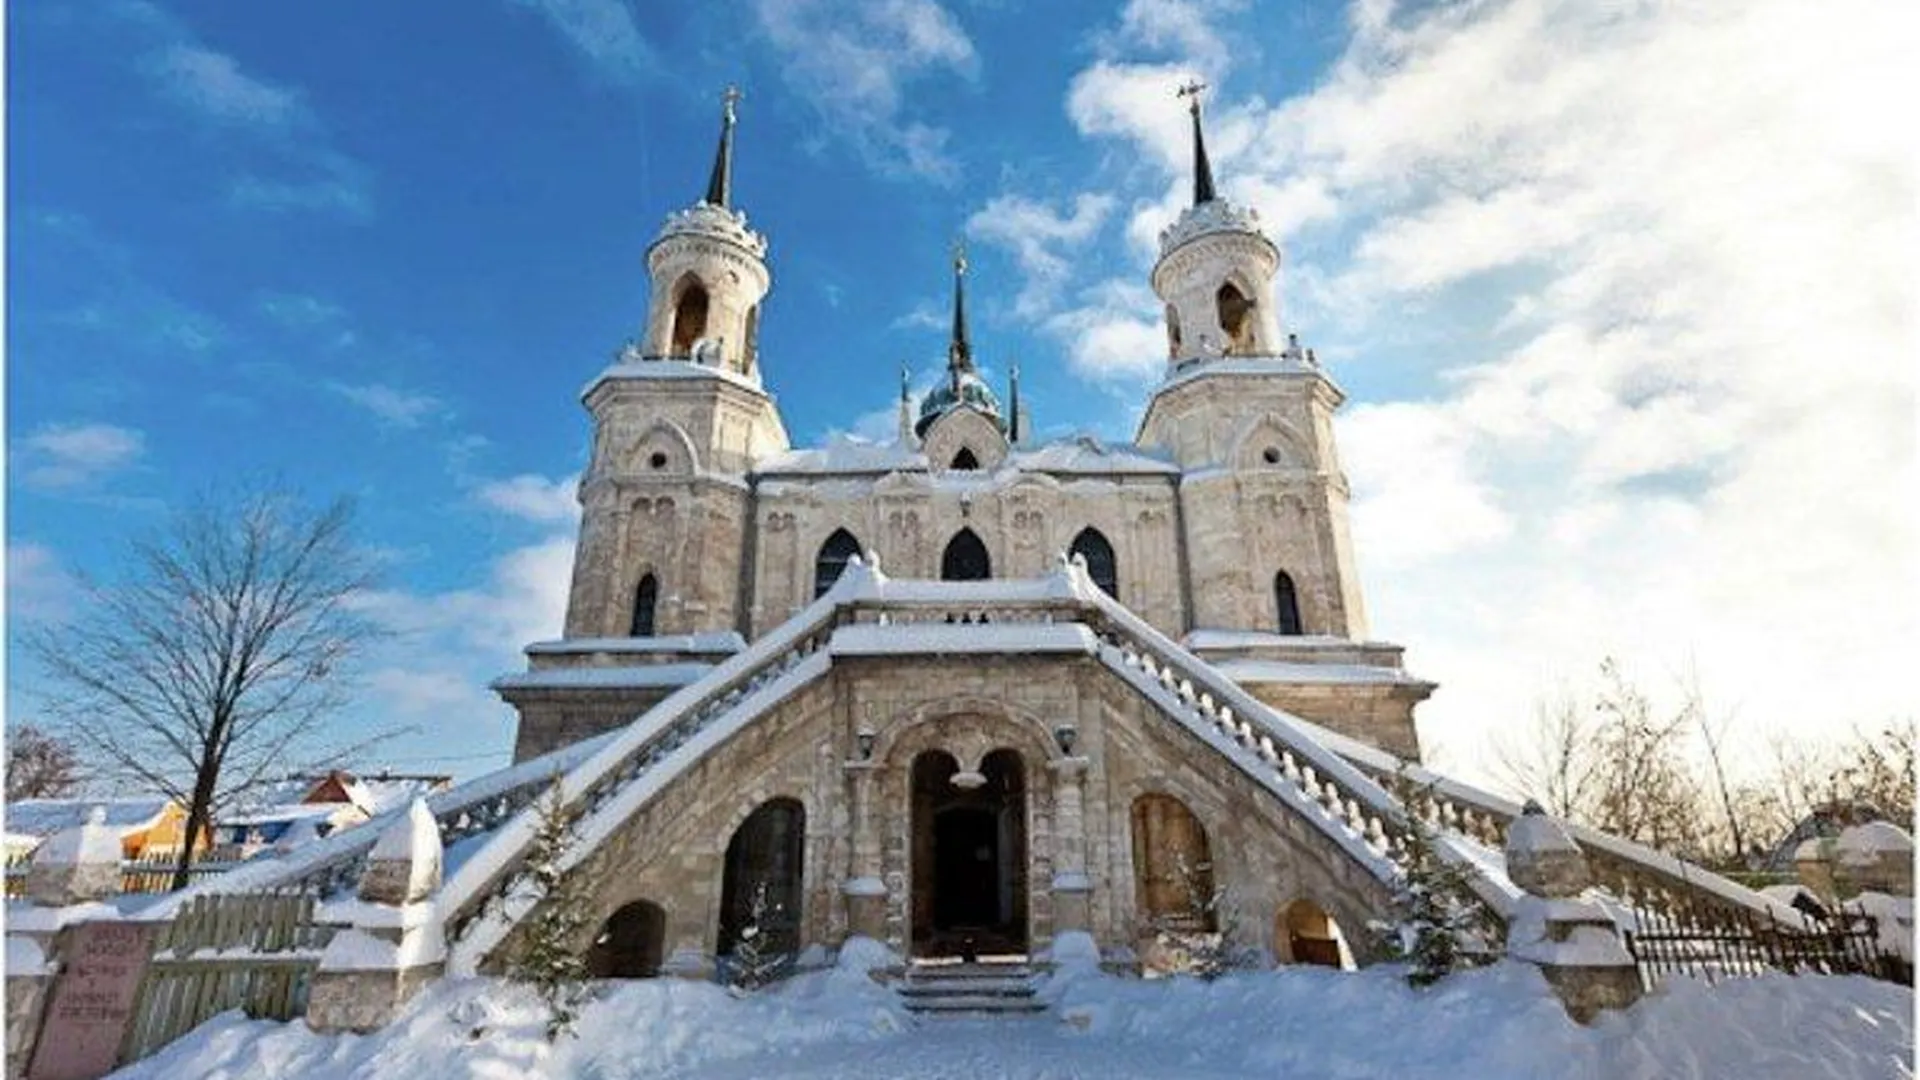 Усадьба Быково: псевдоготическая церковь и английский парк в Подмосковье